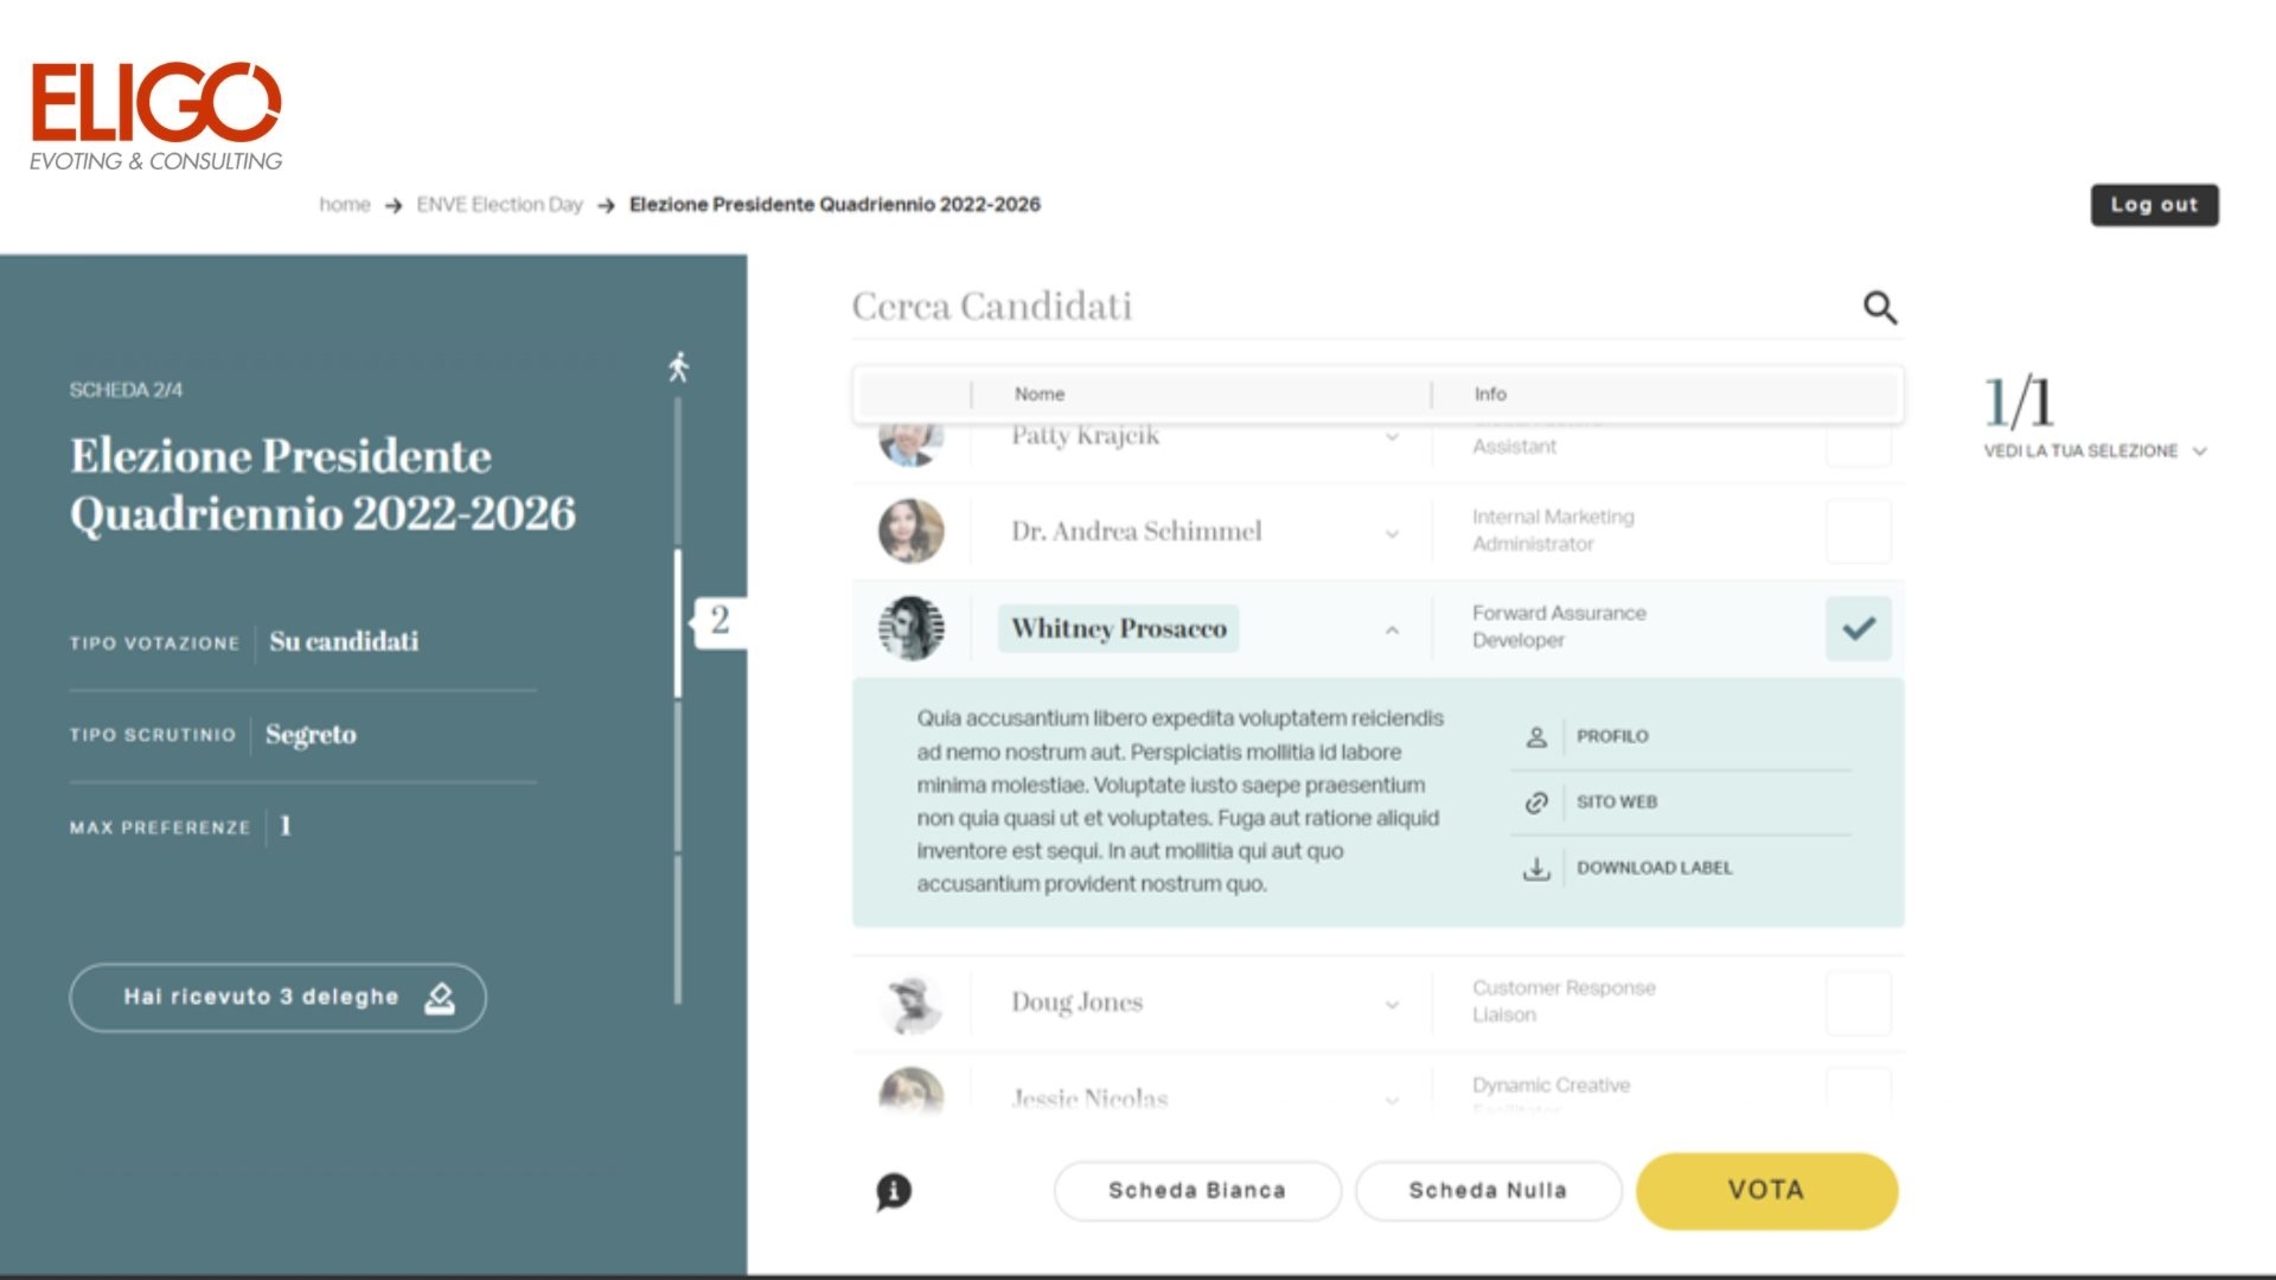 Eligo Next: una schermata dell'interfaccia della piattaforma di voto elettronico e online Eligo Next